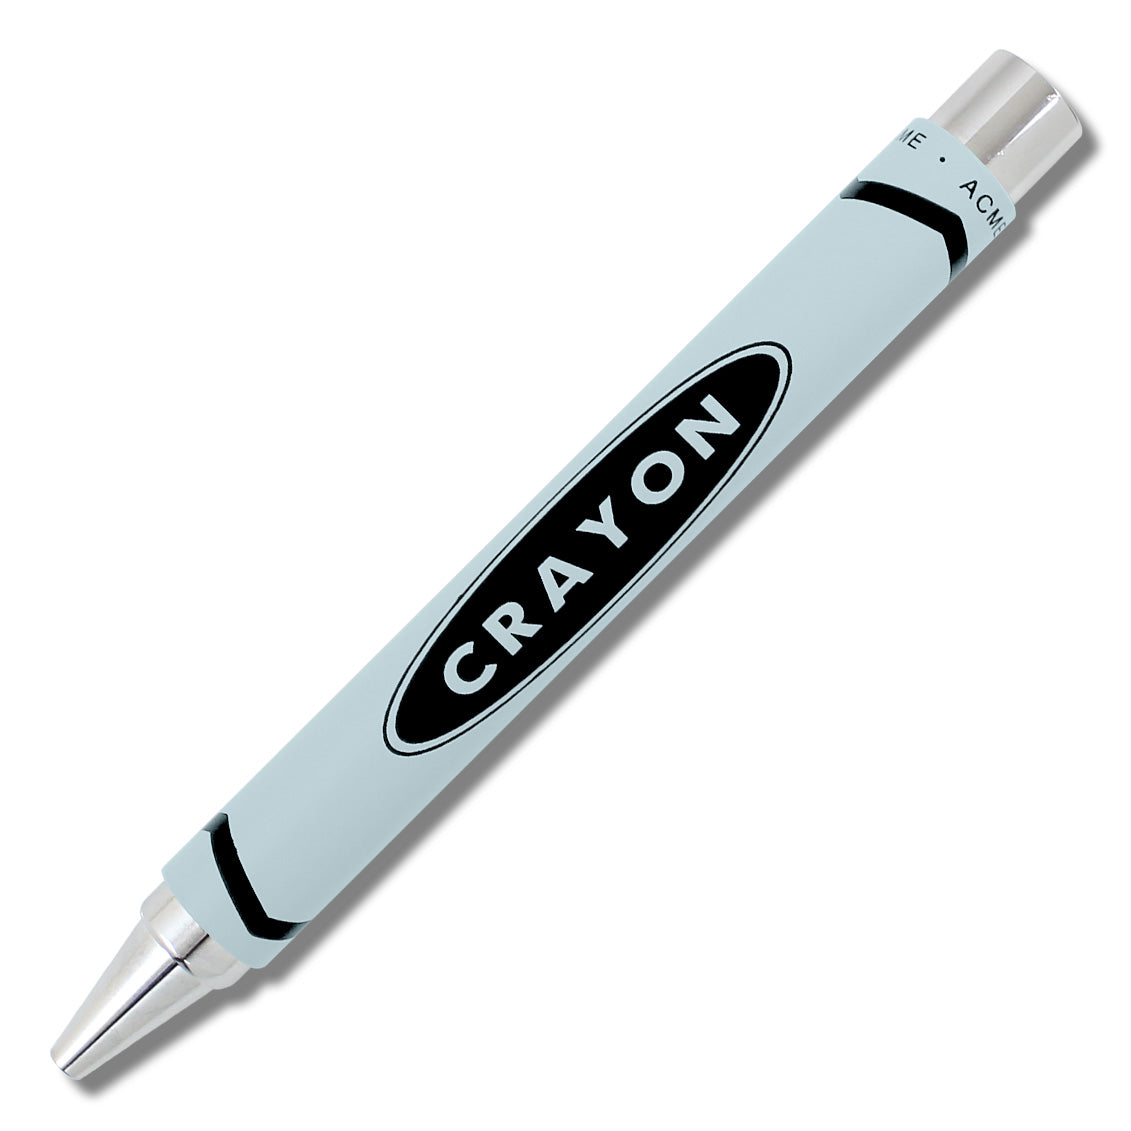 ACME Crayon Chrome Lt. Blue RB Pen